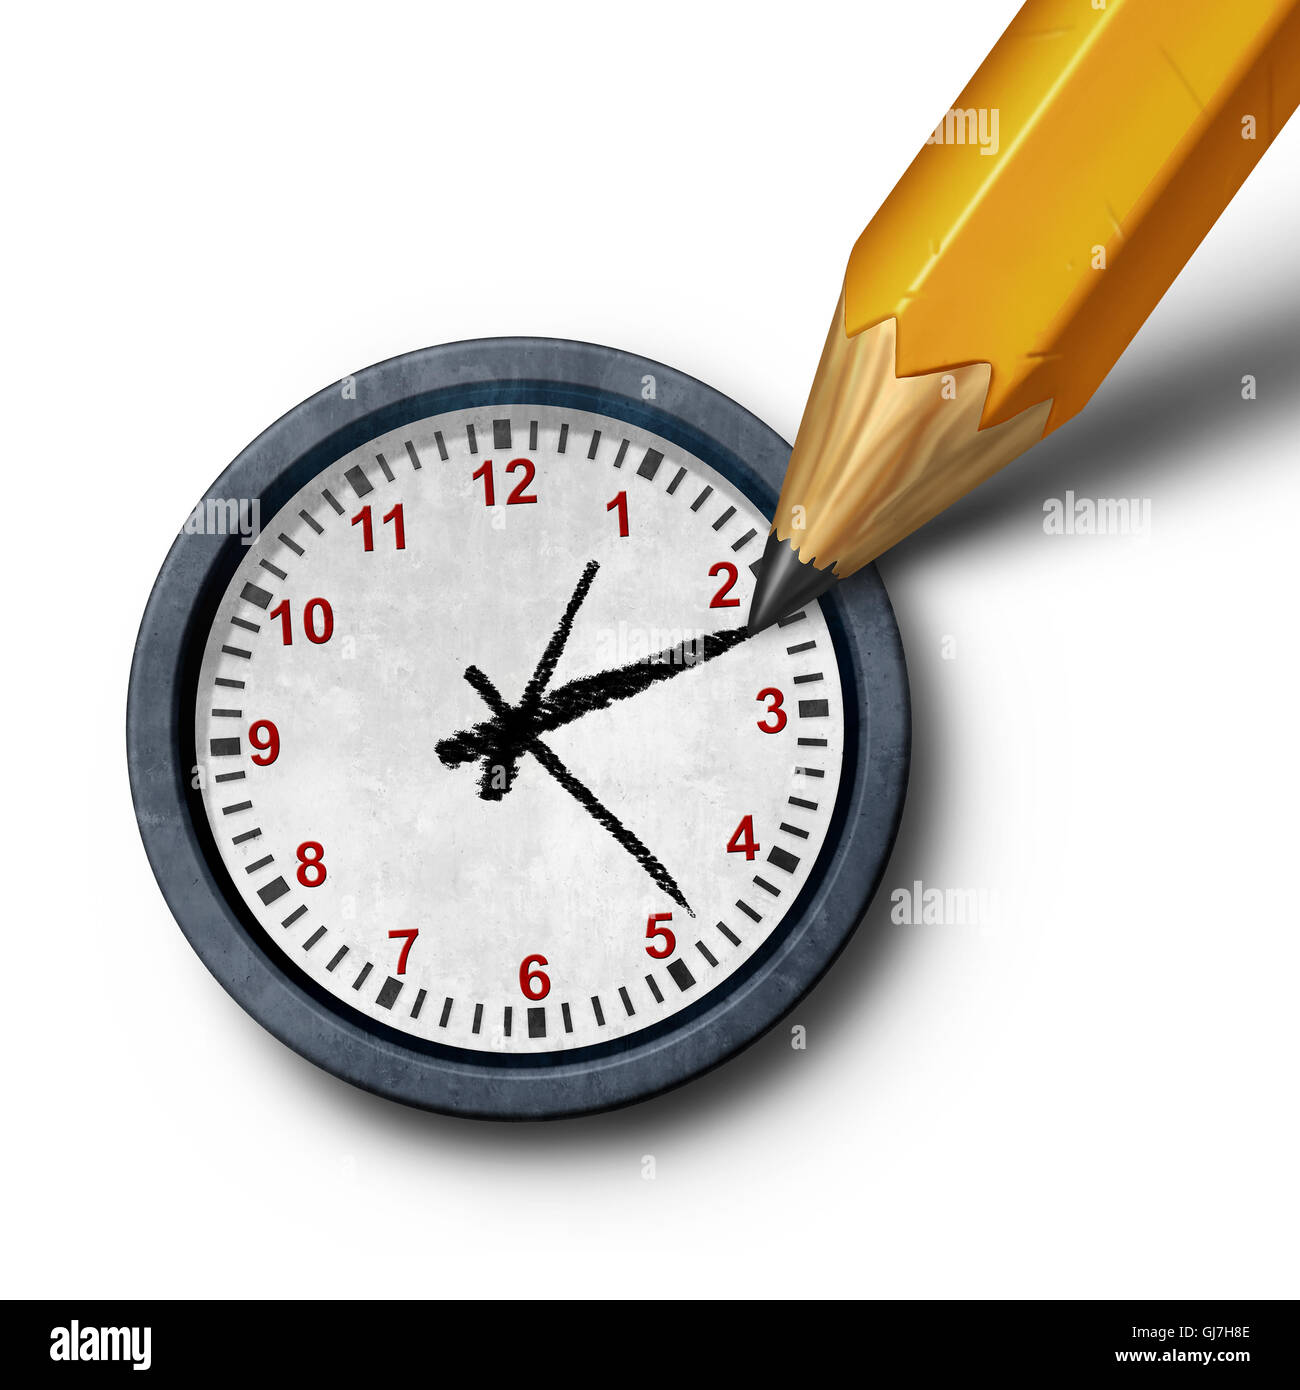 Le temps de planification de gestion d'affaires annexe concept comme un dessin au crayon les aiguilles des heures et des minutes sur une horloge comme contrôle la métaphore 3D illustration. Banque D'Images